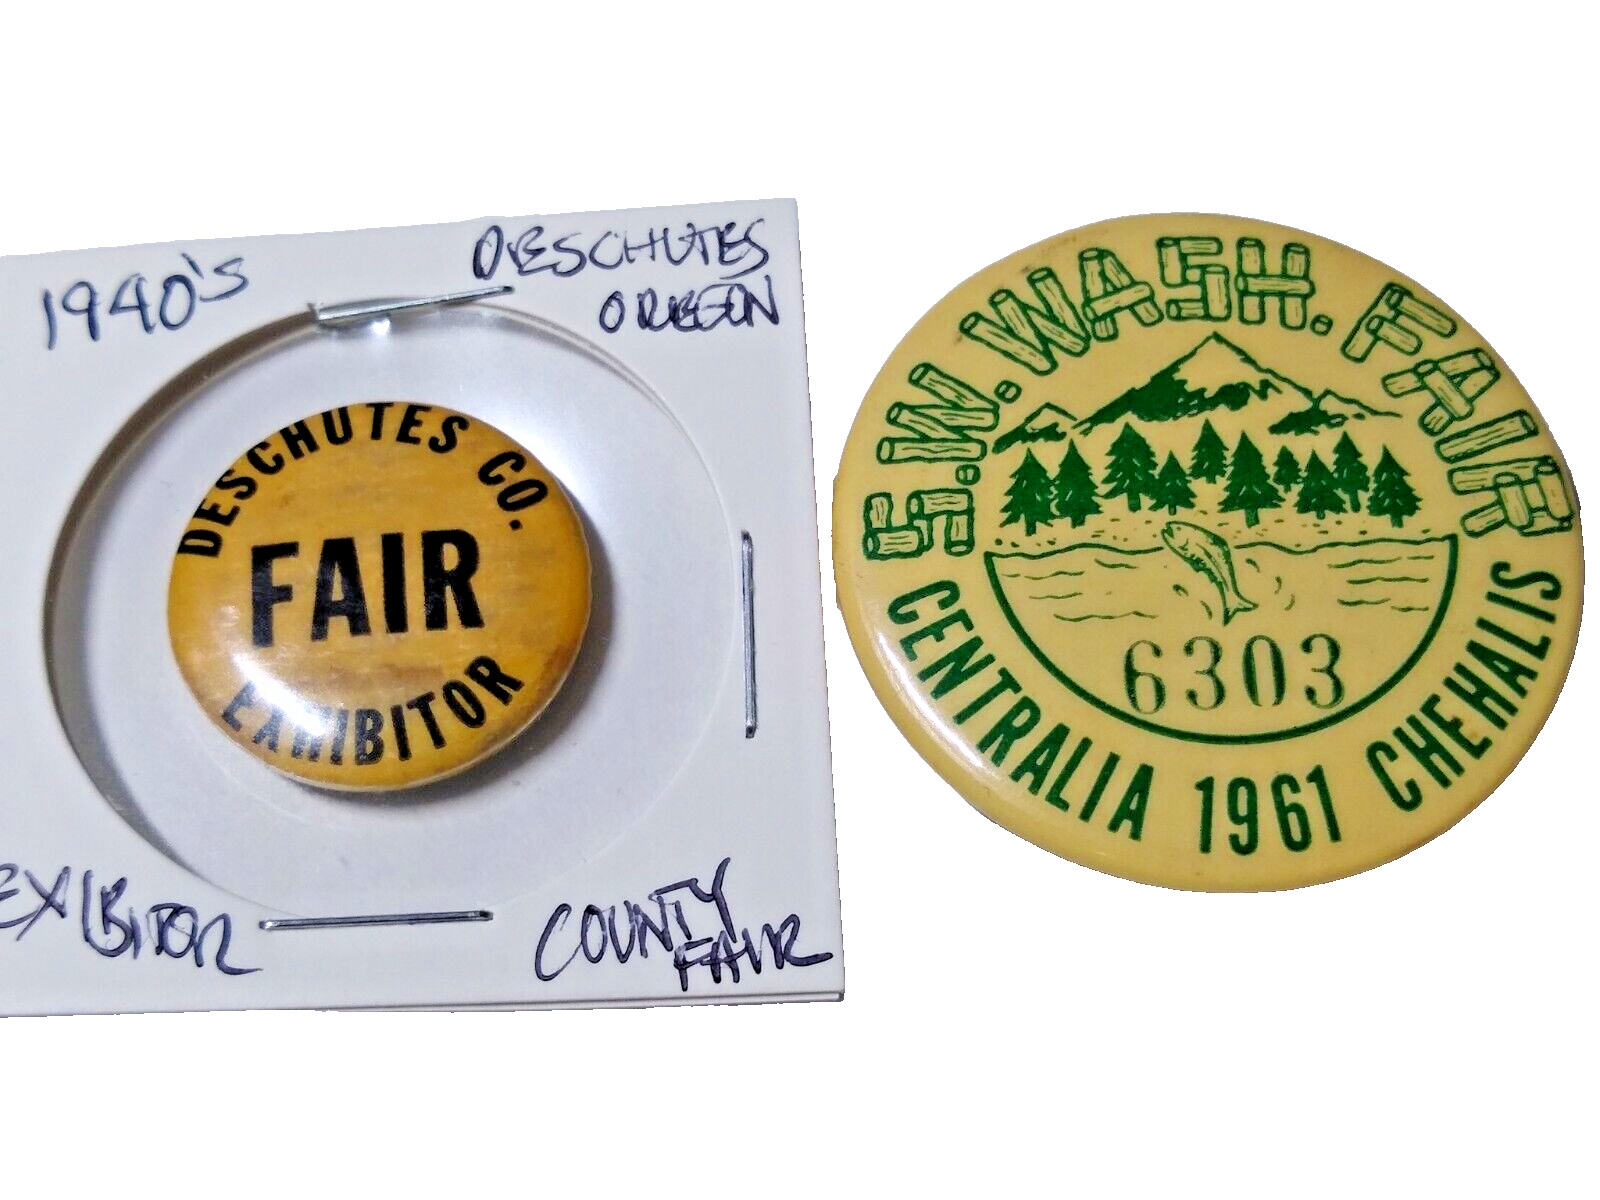 1940\'s Deschutes county Oregon / 1961 SW Washington fair exhibitors pins buttons